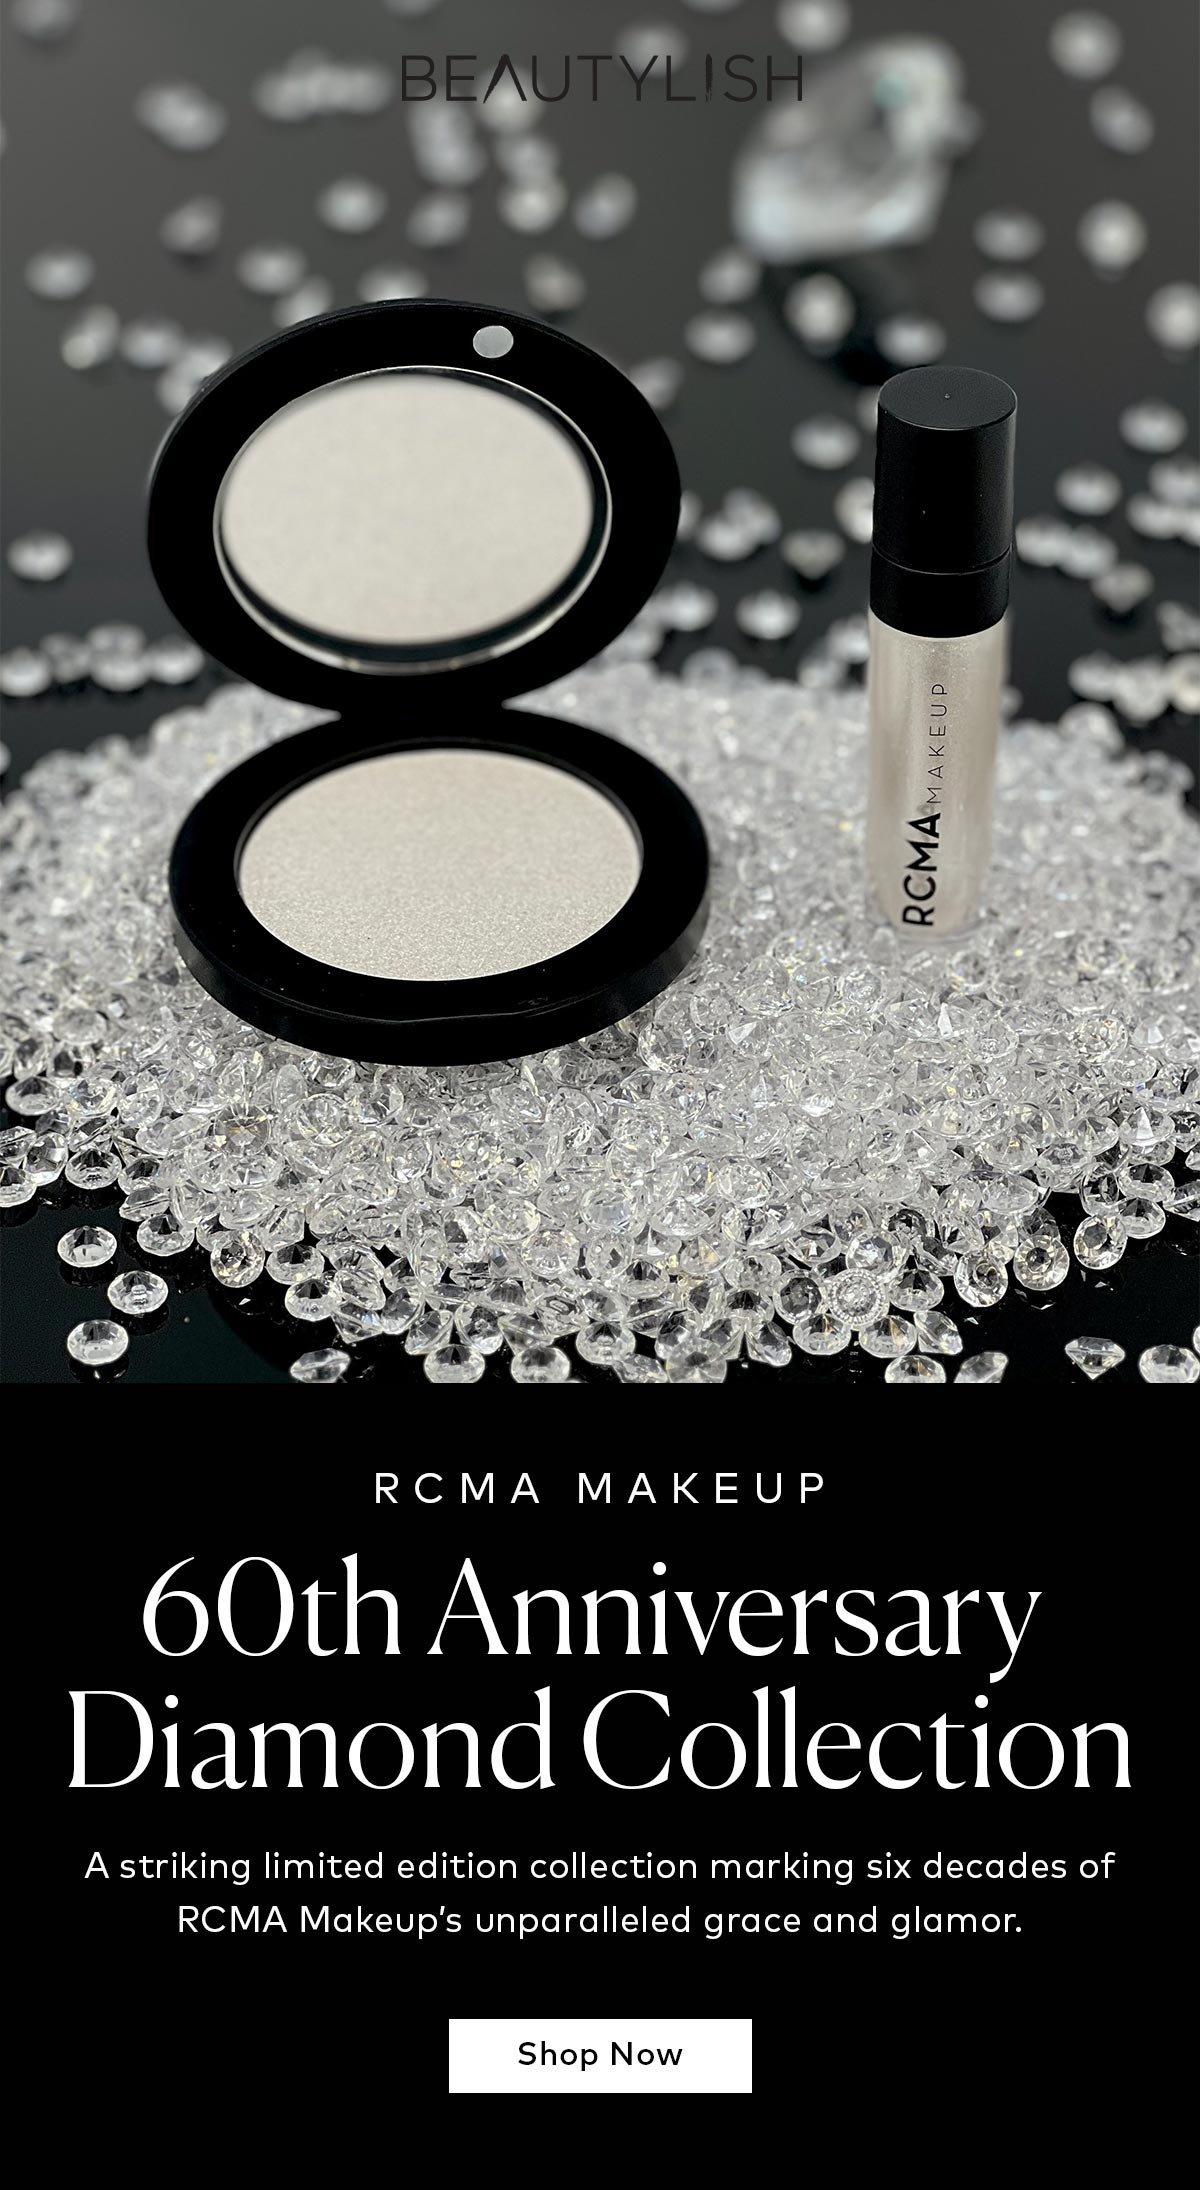 Shop the RCMA Makeup 60th Anniversary Diamond Collection on Beautylish.com! 